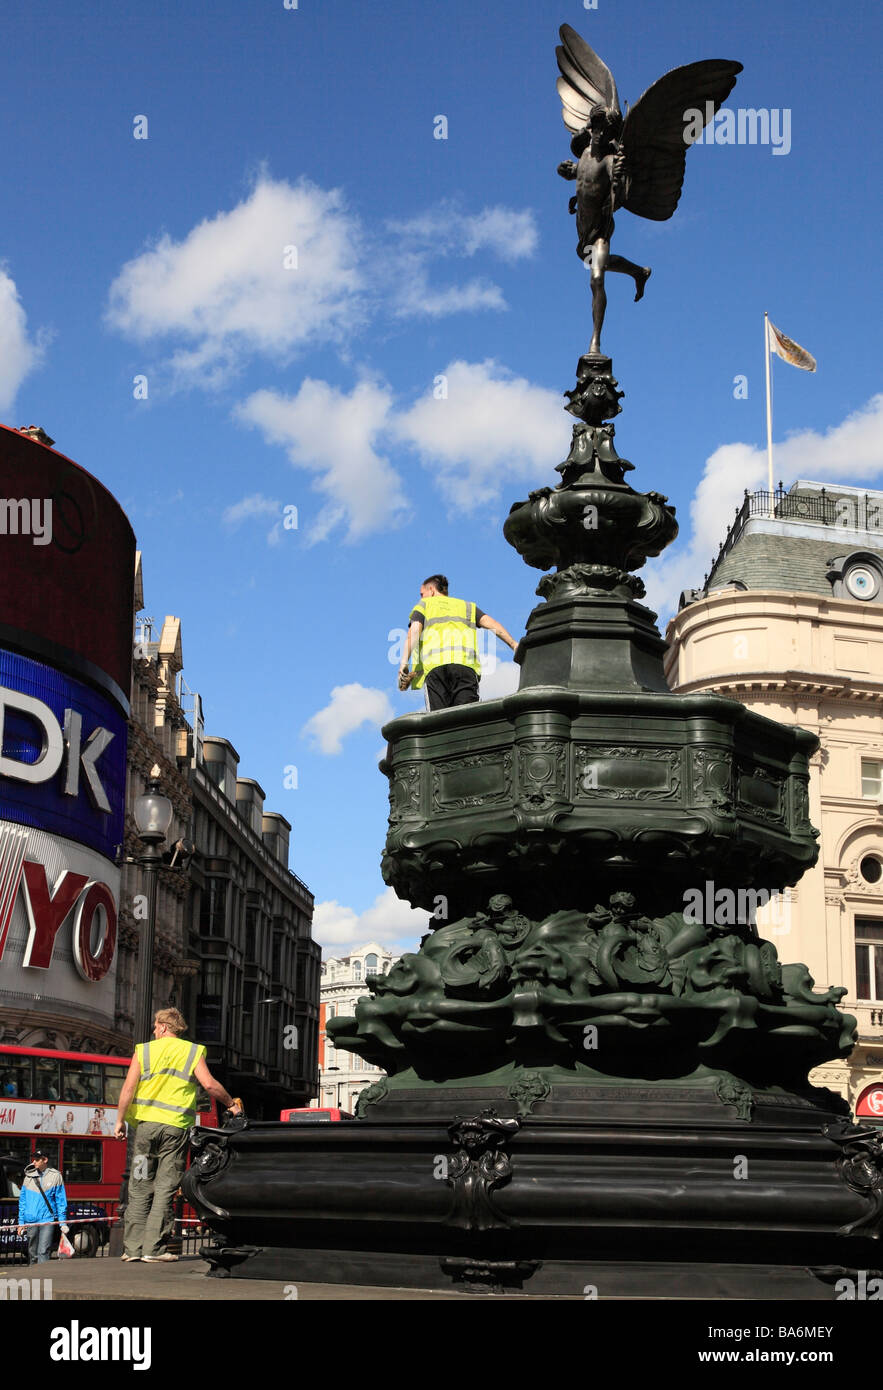 Nettoyage de la statue d'Eros des ouvriers. Piccadilly Circus, Londres, Angleterre, Royaume-Uni. Banque D'Images